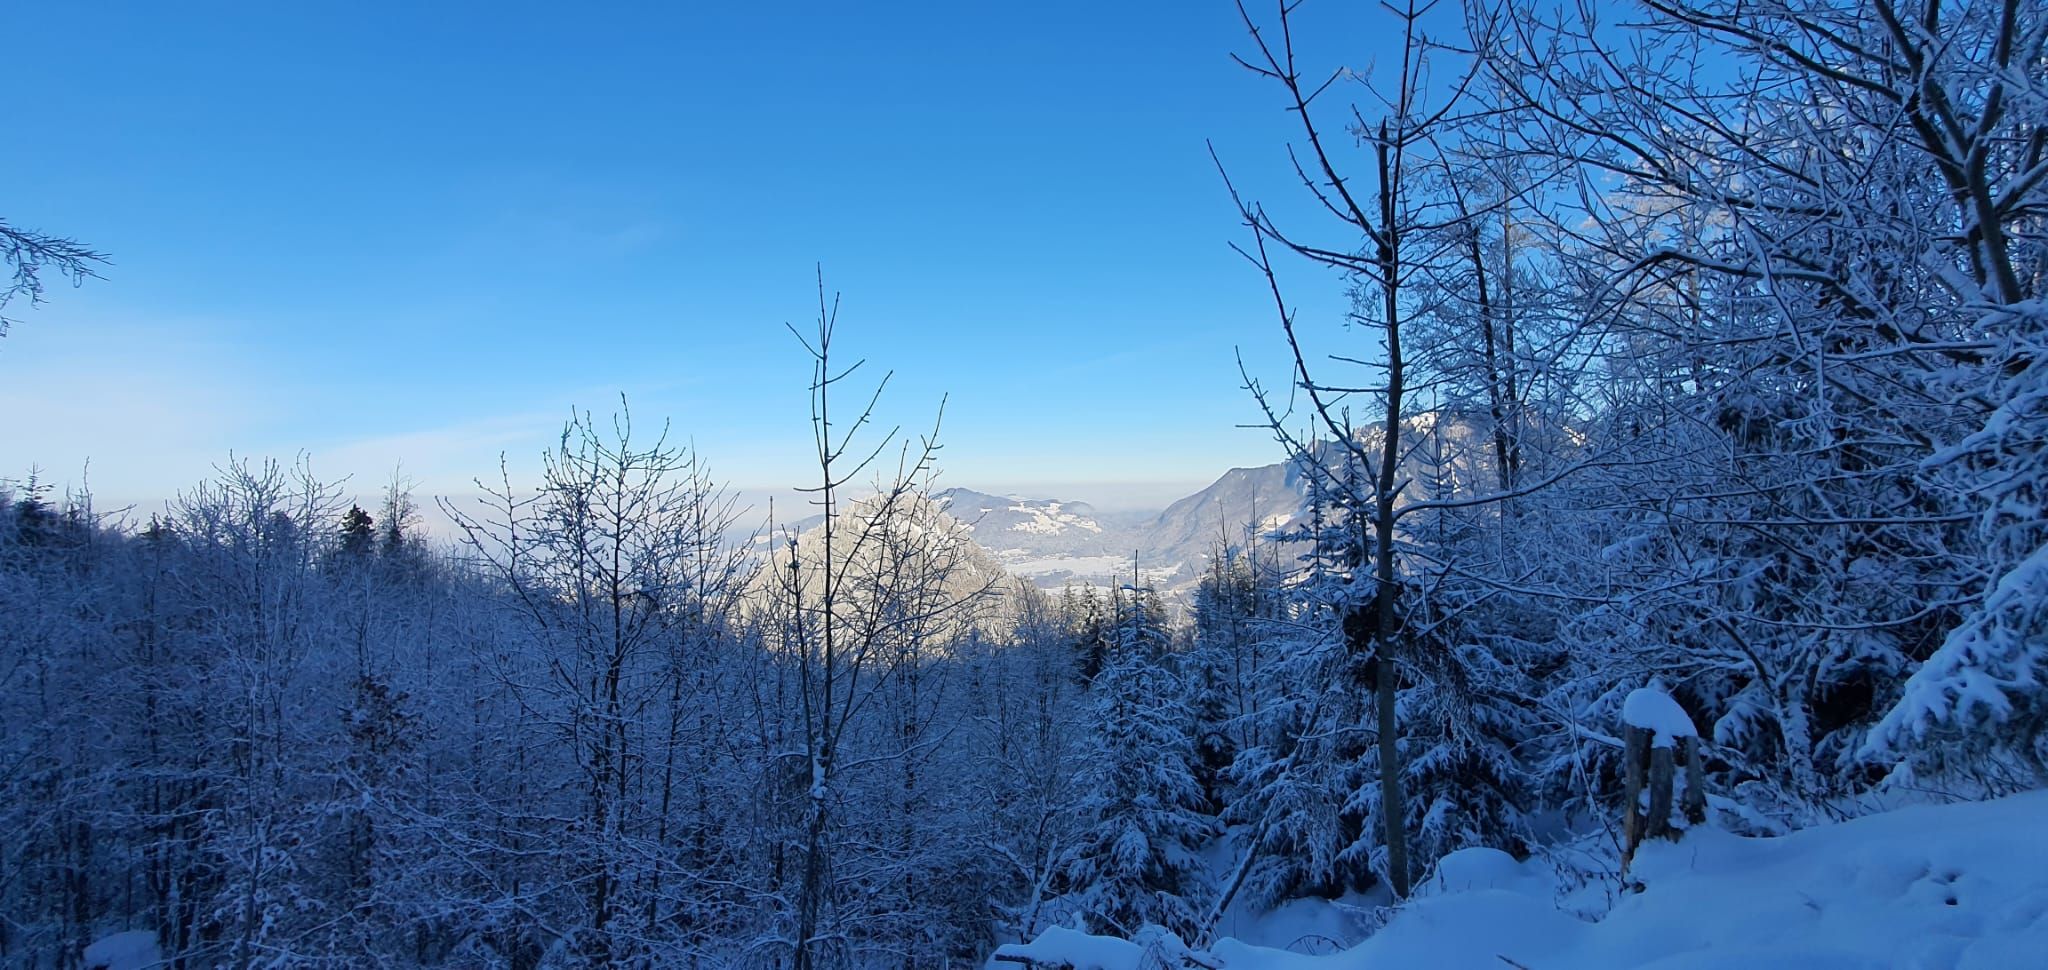 Ausblick über die schneebedeckte Landschaft mit blauem Himmel